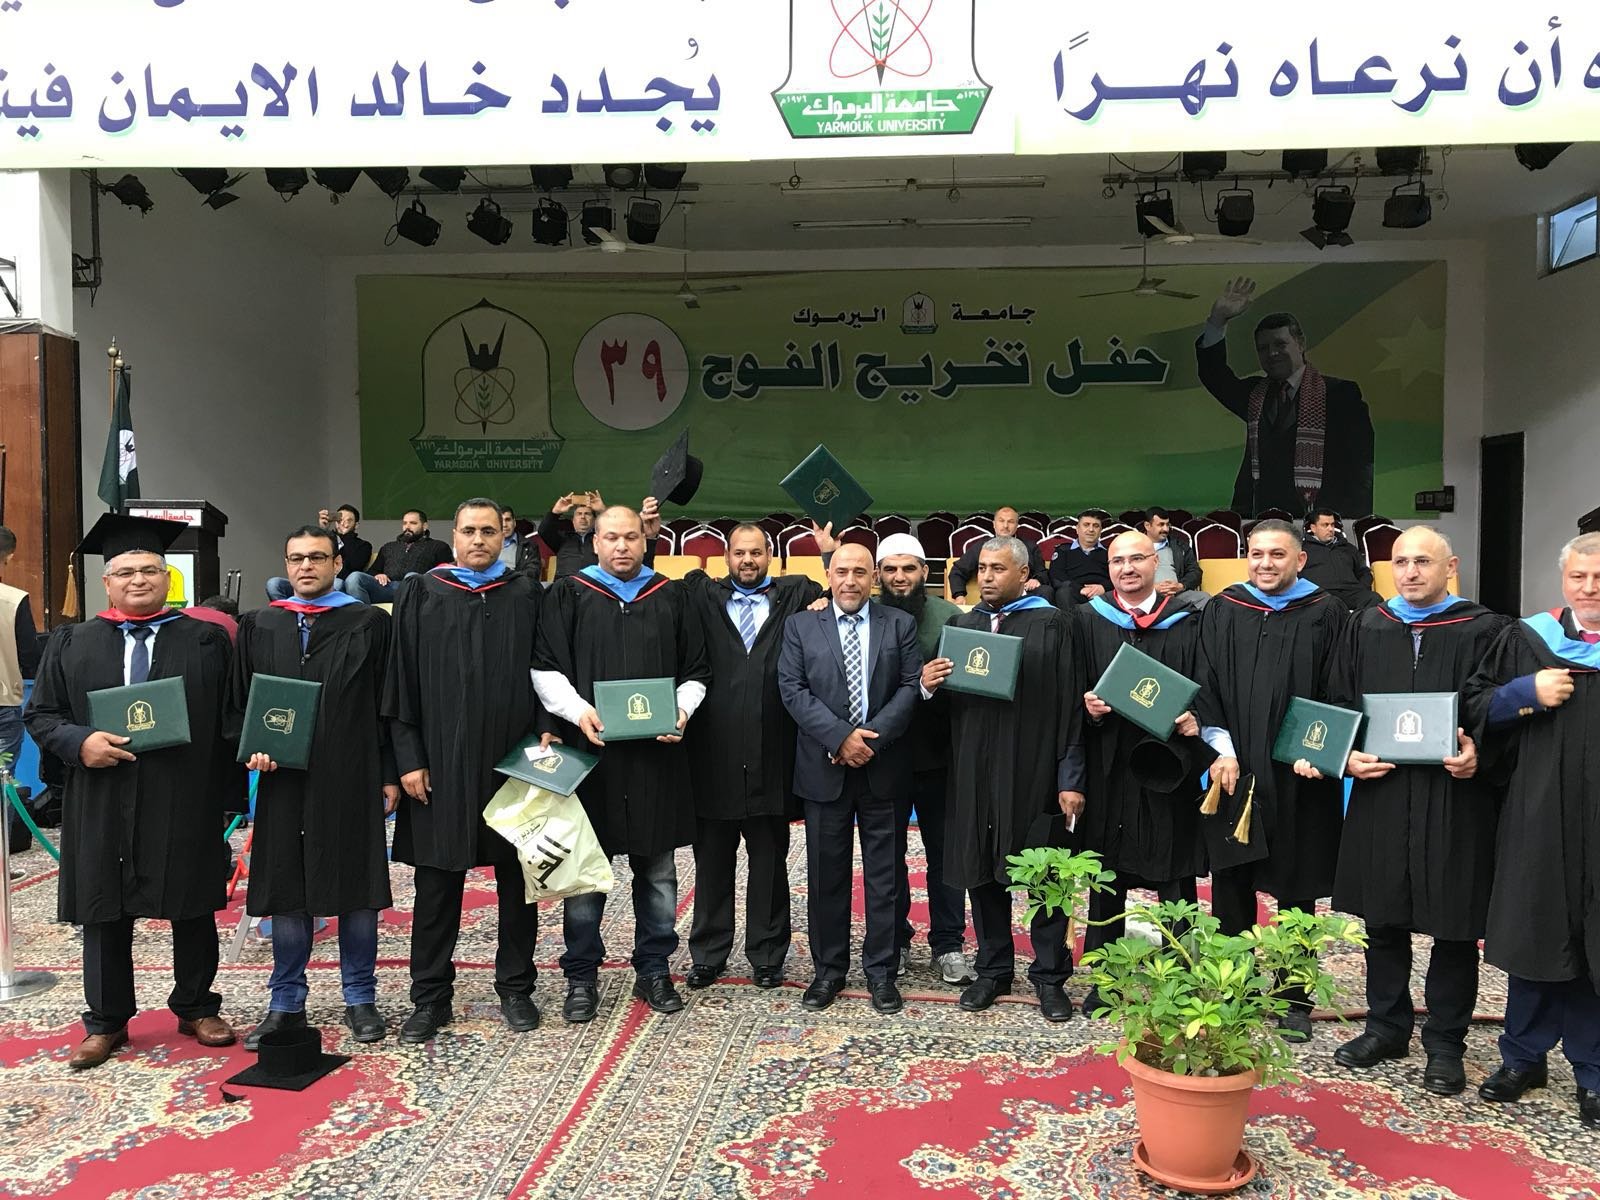 النائب طلب أبو عرار يشارك في تخرج 11 دكتور في تخصص الادارة التربوية من طلاب عرب الداخل الفلسطيني من جامعة اليرموك في المملكة الاردنية الهاشمية-5